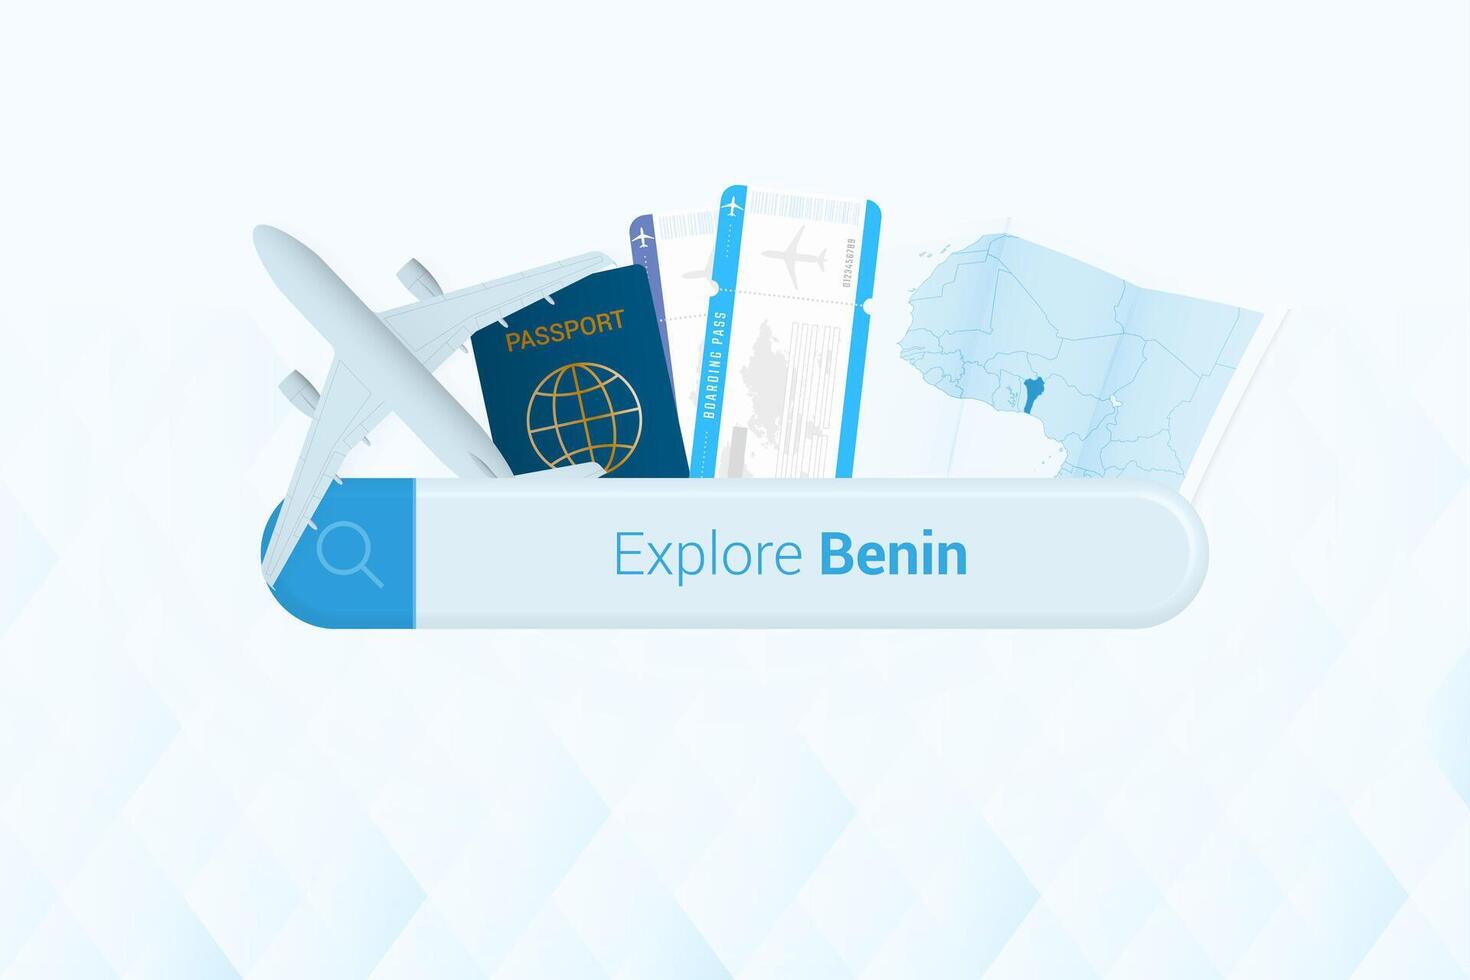 recherche des billets à Bénin ou Voyage destination dans bénin. recherche bar avec avion, passeport, embarquement passer, des billets et carte. vecteur